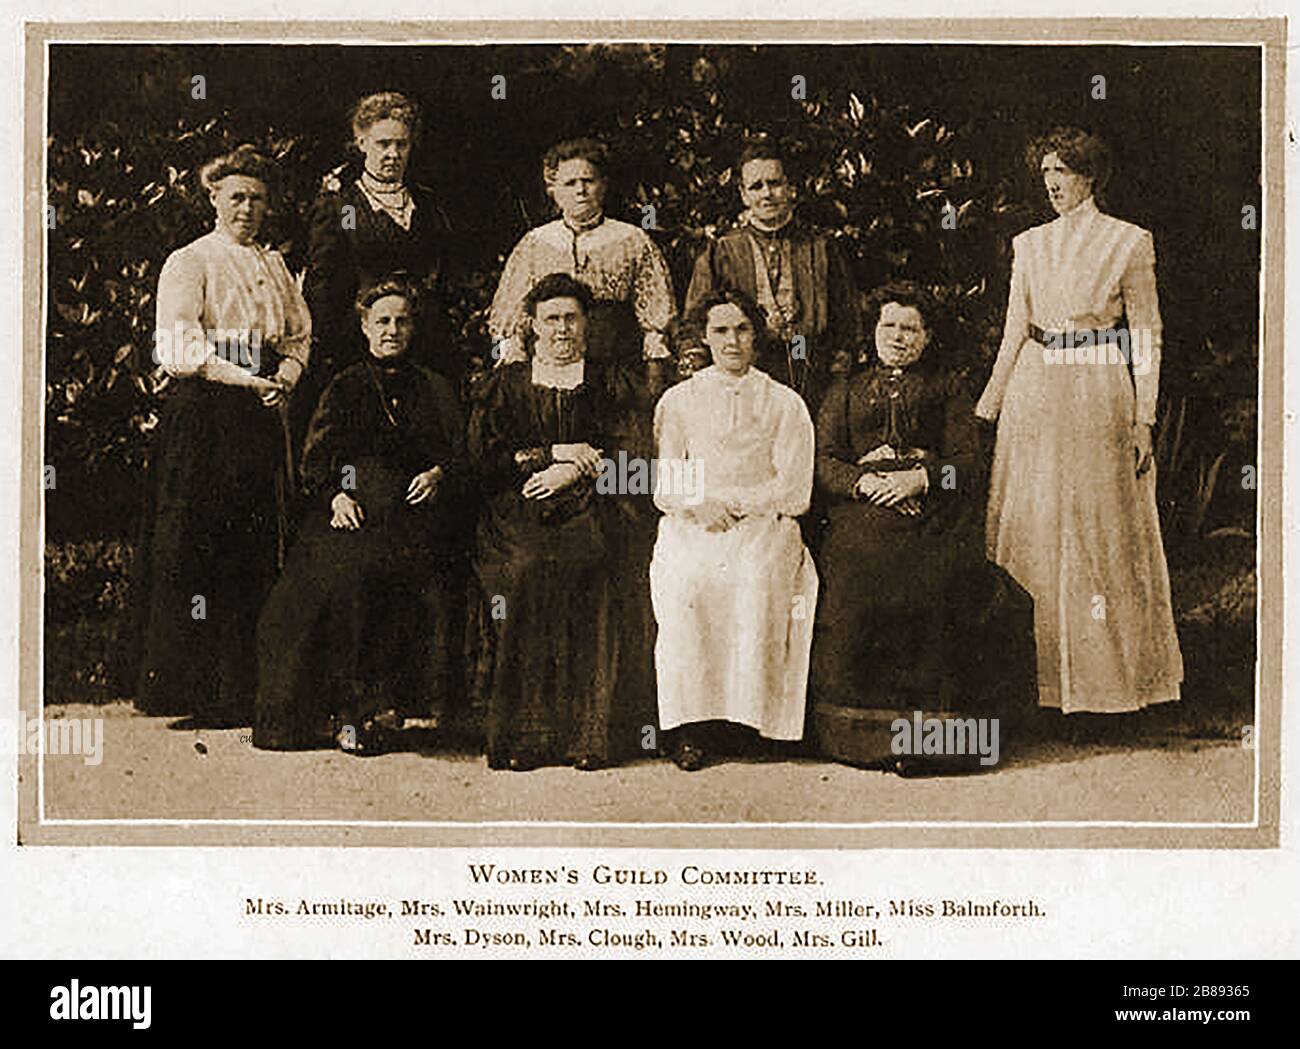 HUDDERSFIELD Industrial Society Portrait de groupe du Comité de la Guilde des femmes:- Armitage, Wainwright, Hemmingway, Miller, Balmforth, Dyson, Clough, Wood, Gill. Banque D'Images